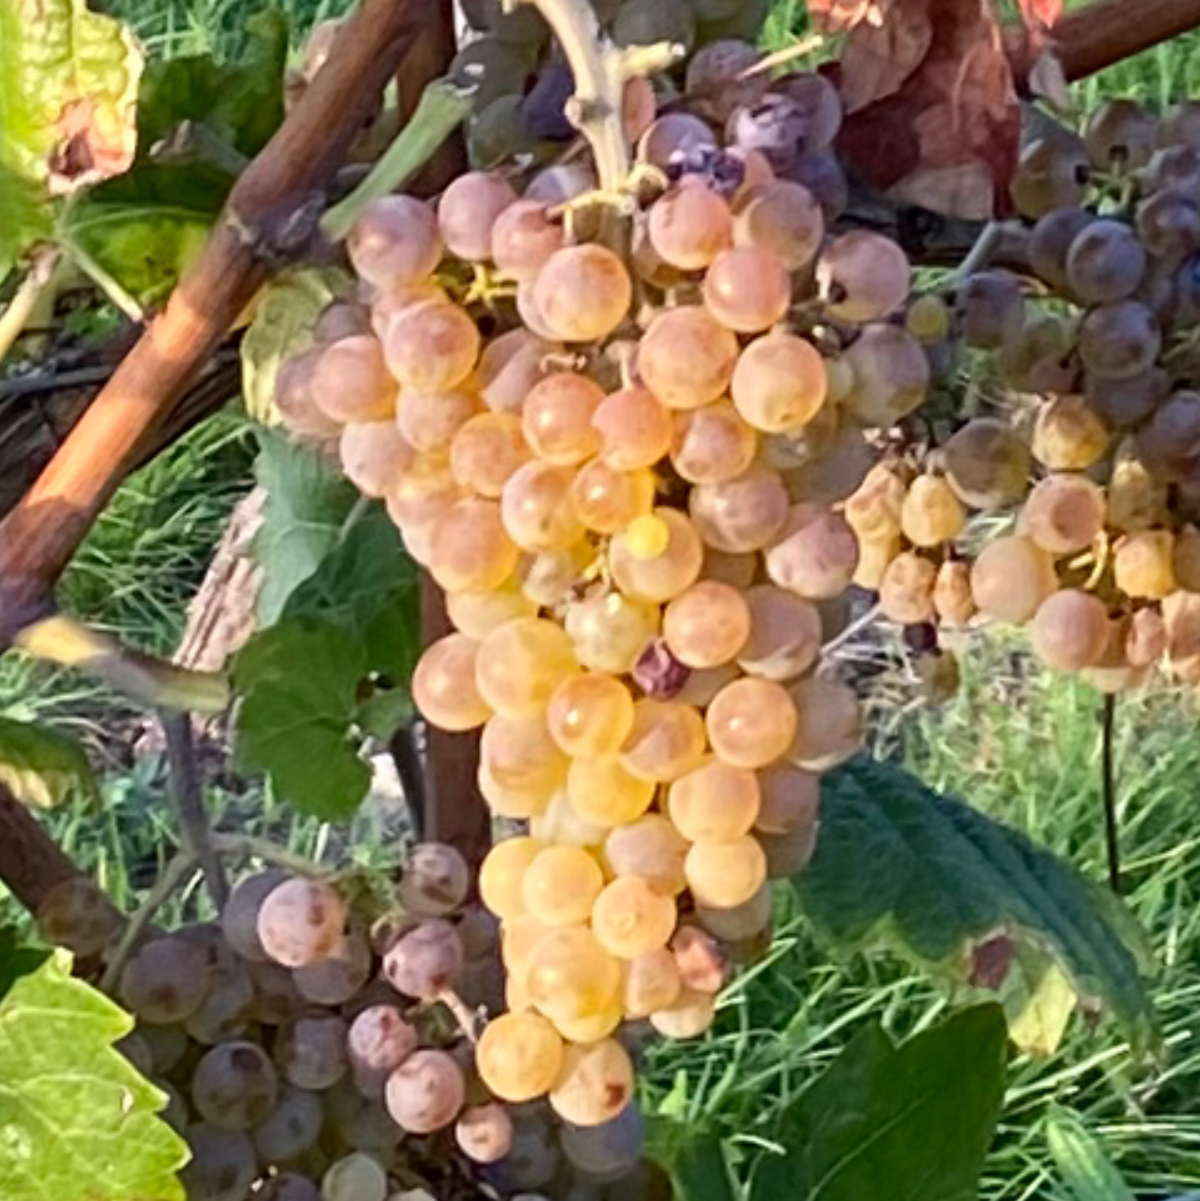 Der Beginn der Reife ist entscheidend für die Weinqualität. Hier zu sehen sind reife Beeren von Calardis Blanc, einer PiWi-Sorte und Nachkomme der ursprünglichen Test-Kreuzung.
